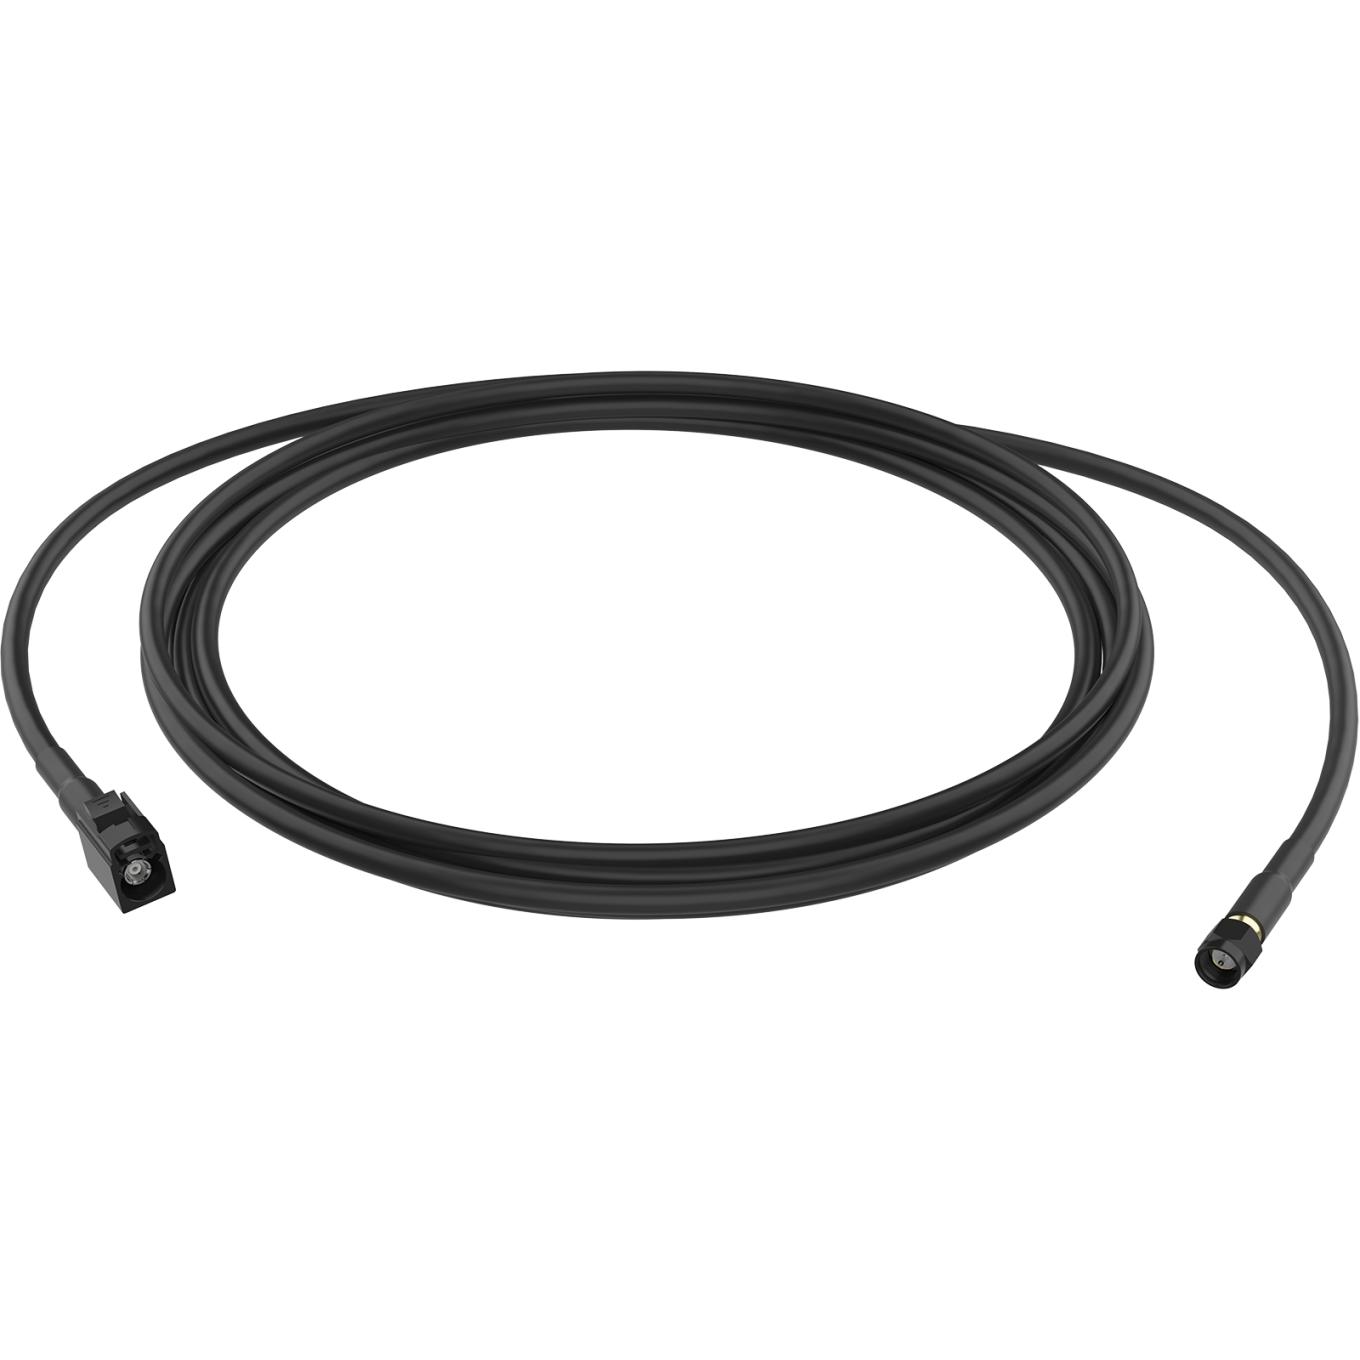 AXIS TU6005 Plenum Cable, 1 m